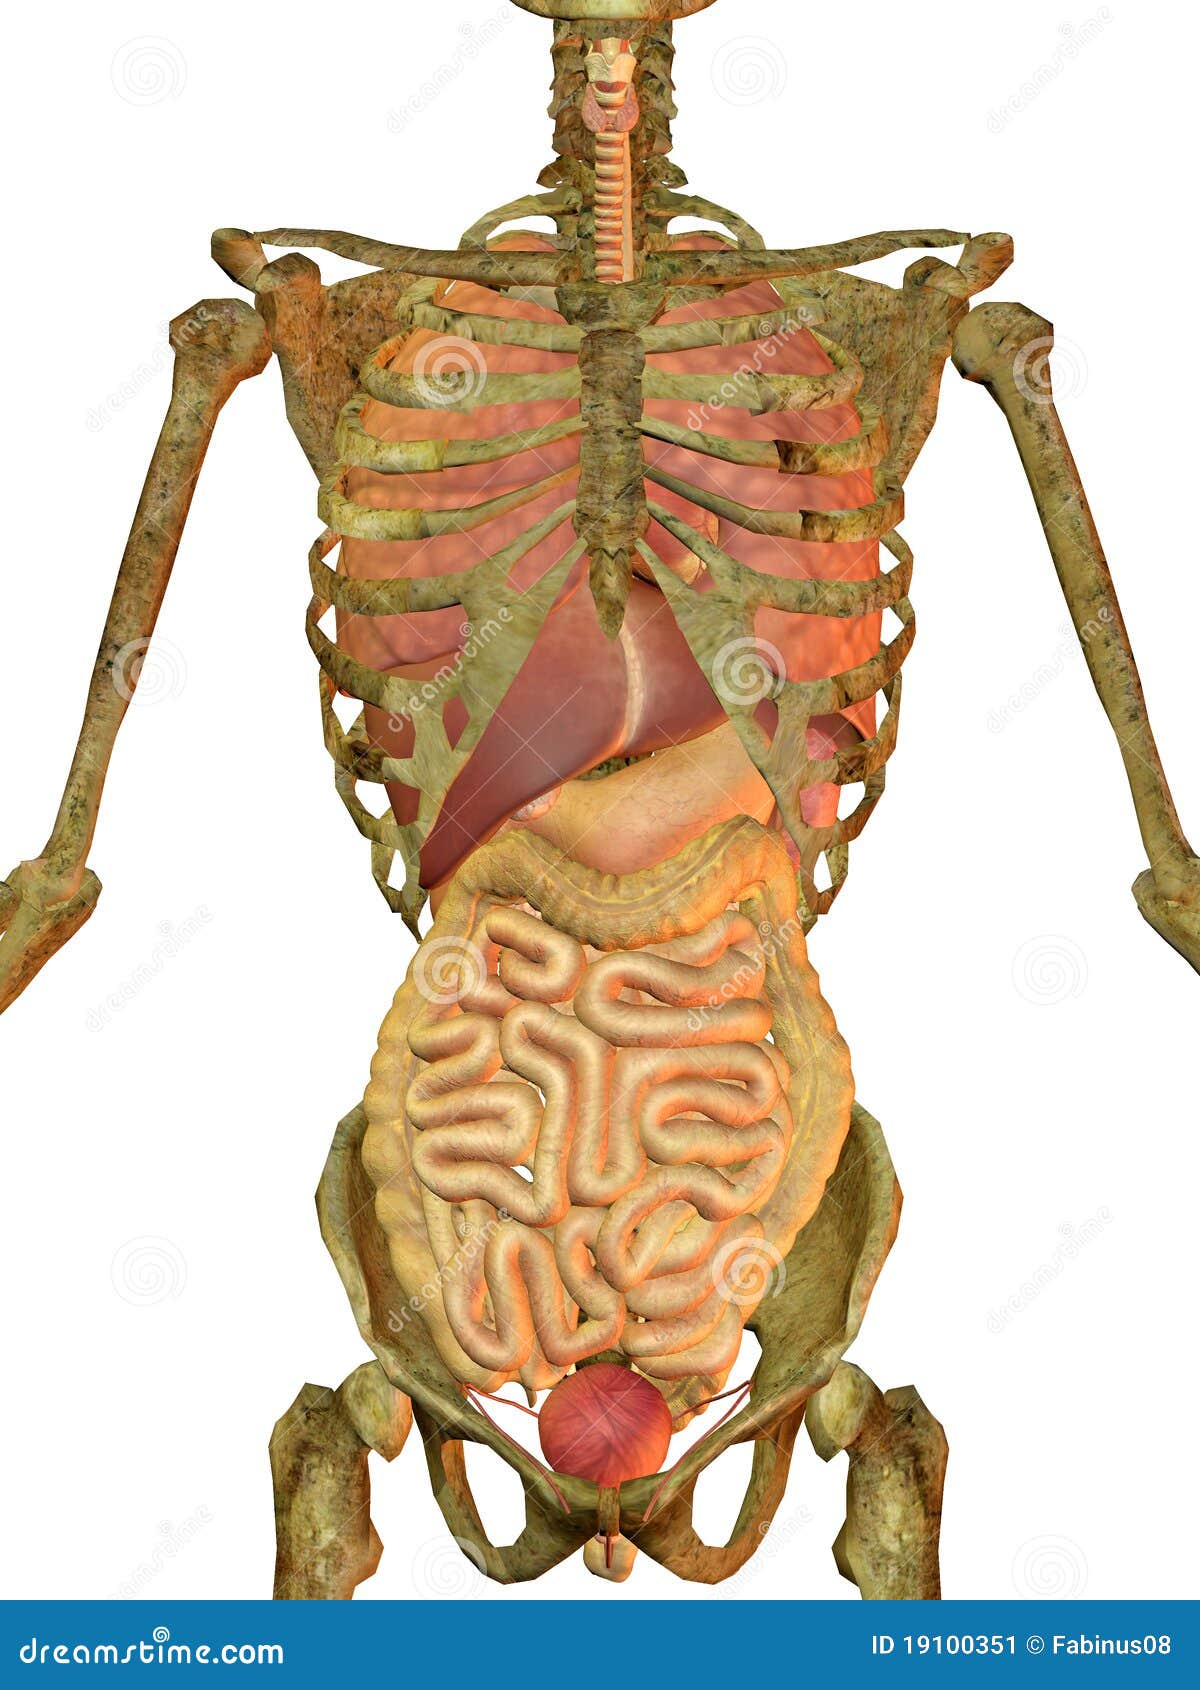 Скелет с внутренними органами. Человеческий скелет с внутренними органами.